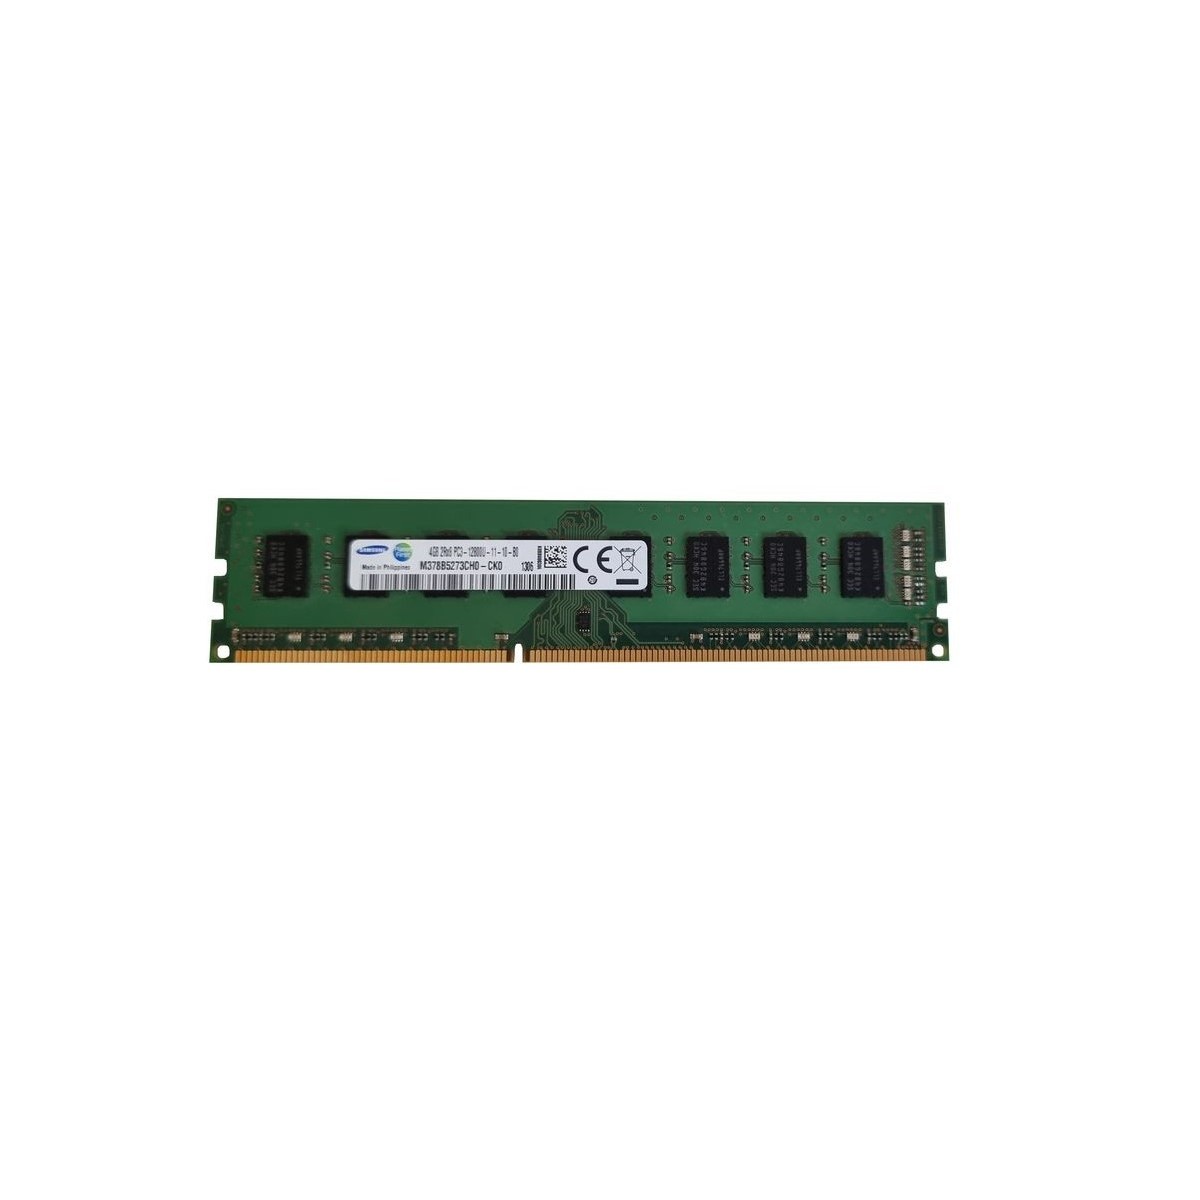 SAMSUNG 4GB DDR3 PC3-12800U M378B5273CH0-CK0